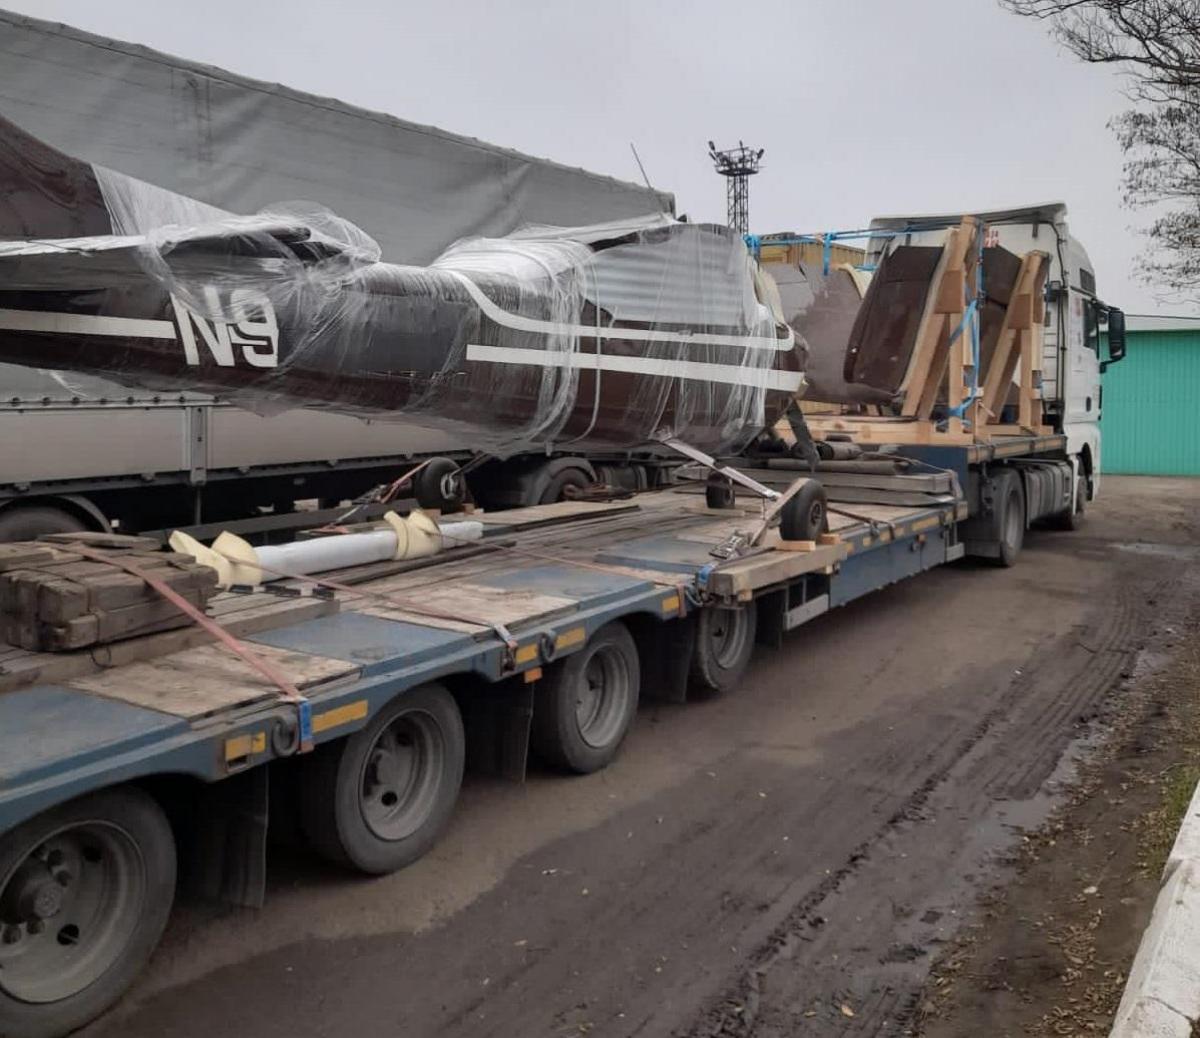 Самолет "CESSNA" 182R был на прицепе грузовика / фото Одесская таможня